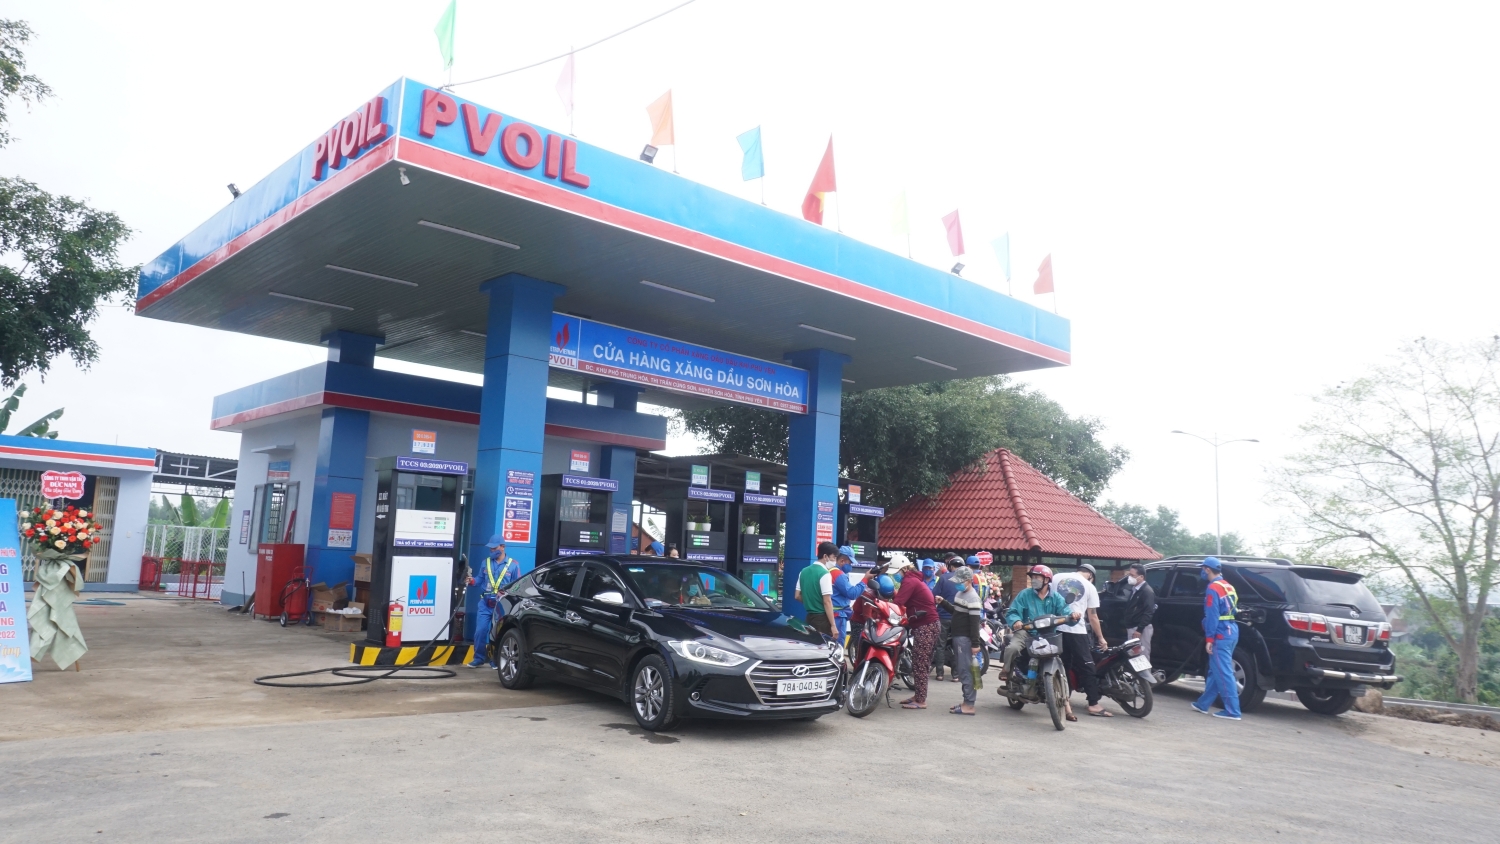 PVOIL Phú Yên khai trương cửa hàng xăng dầu Sơn Hòa